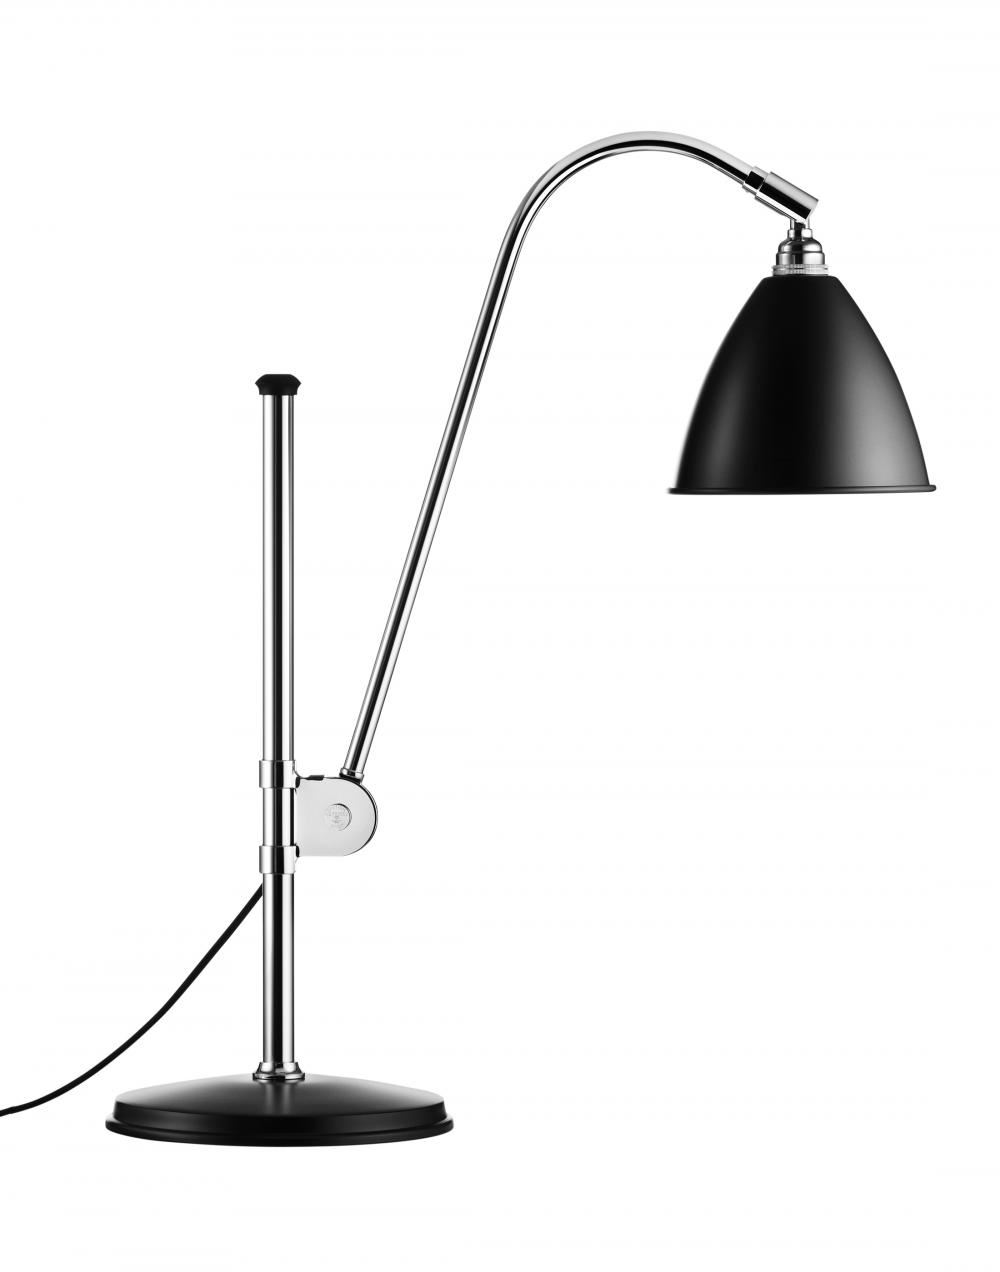 Bestlite Bl1 Table Lamp Chrome Black